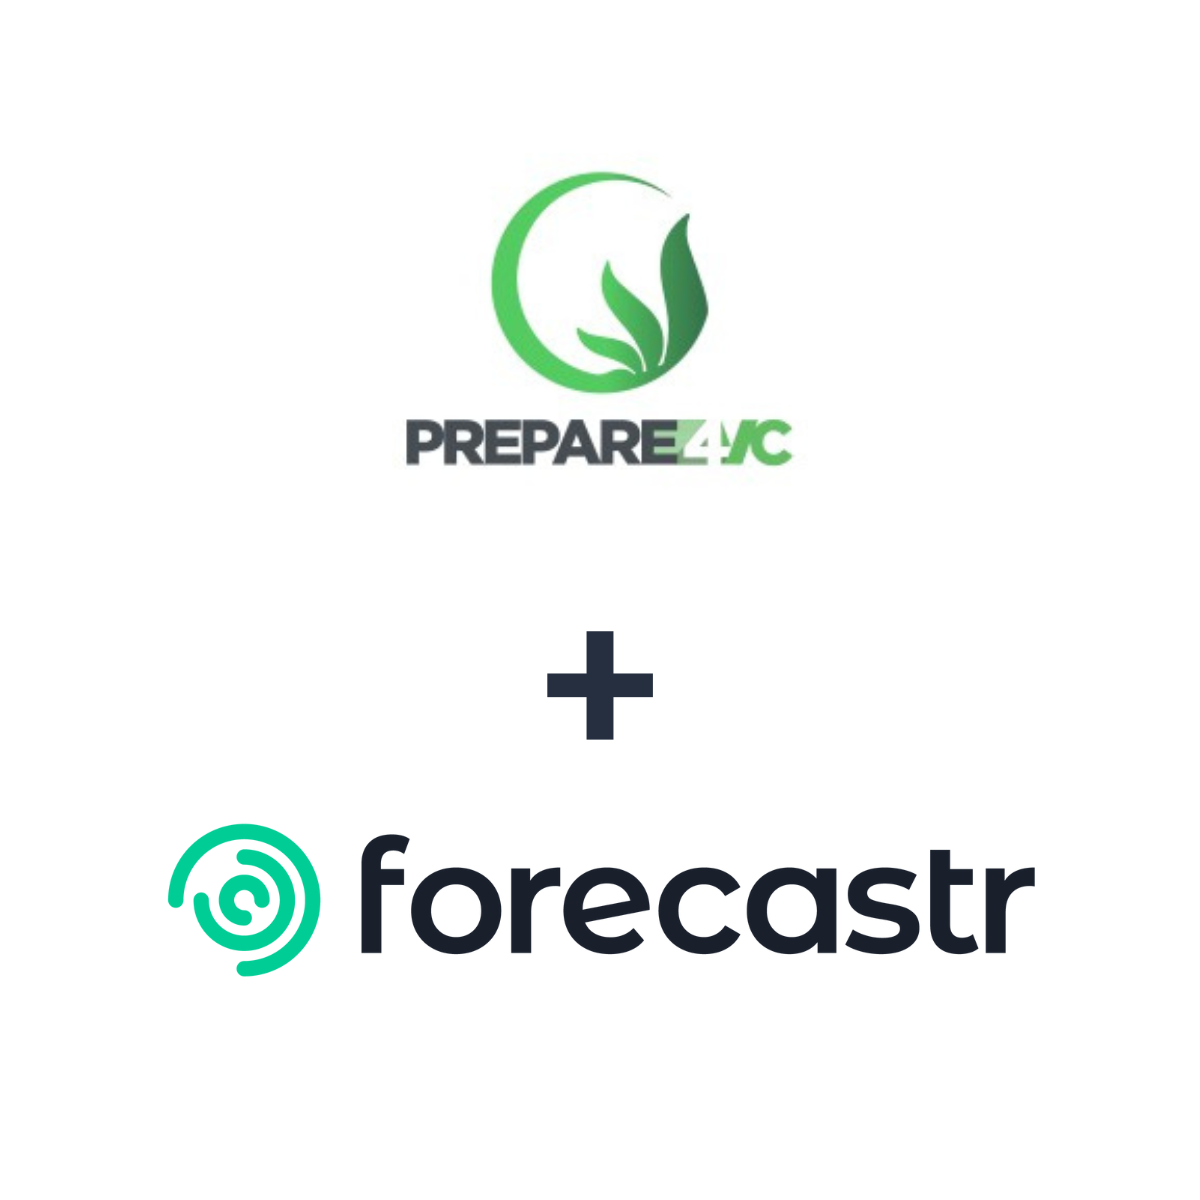 Partnership logos: Forecastr + Prepare 4 VC